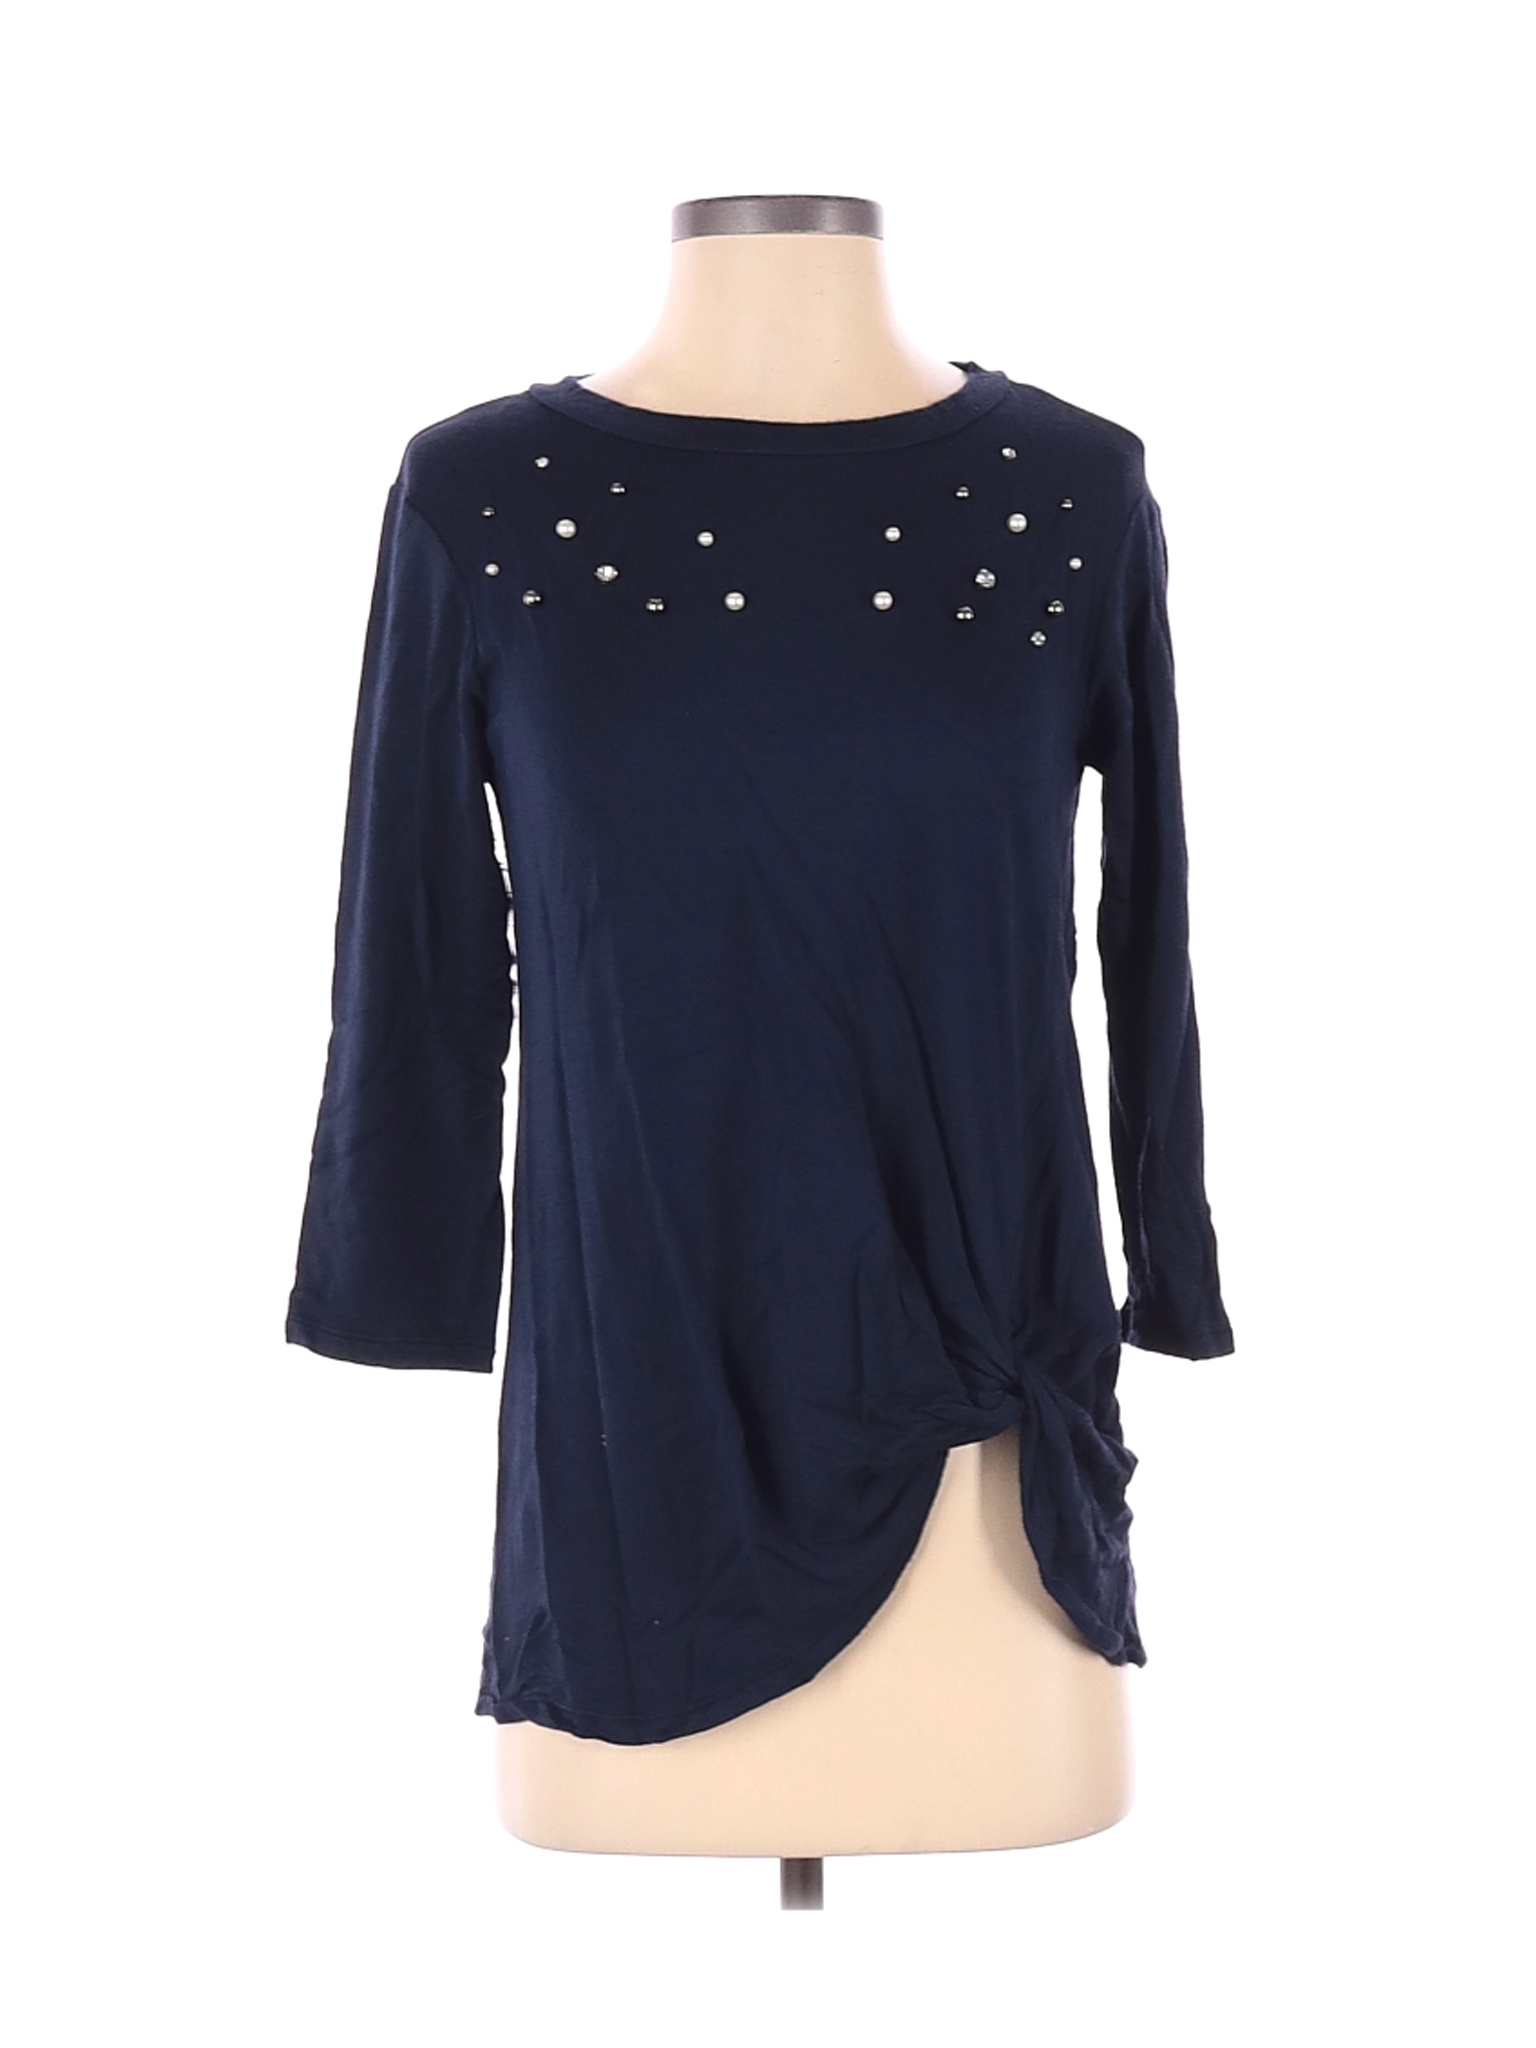 Crew Knit Wear Women Blue 3/4 Sleeve Top XS | eBay